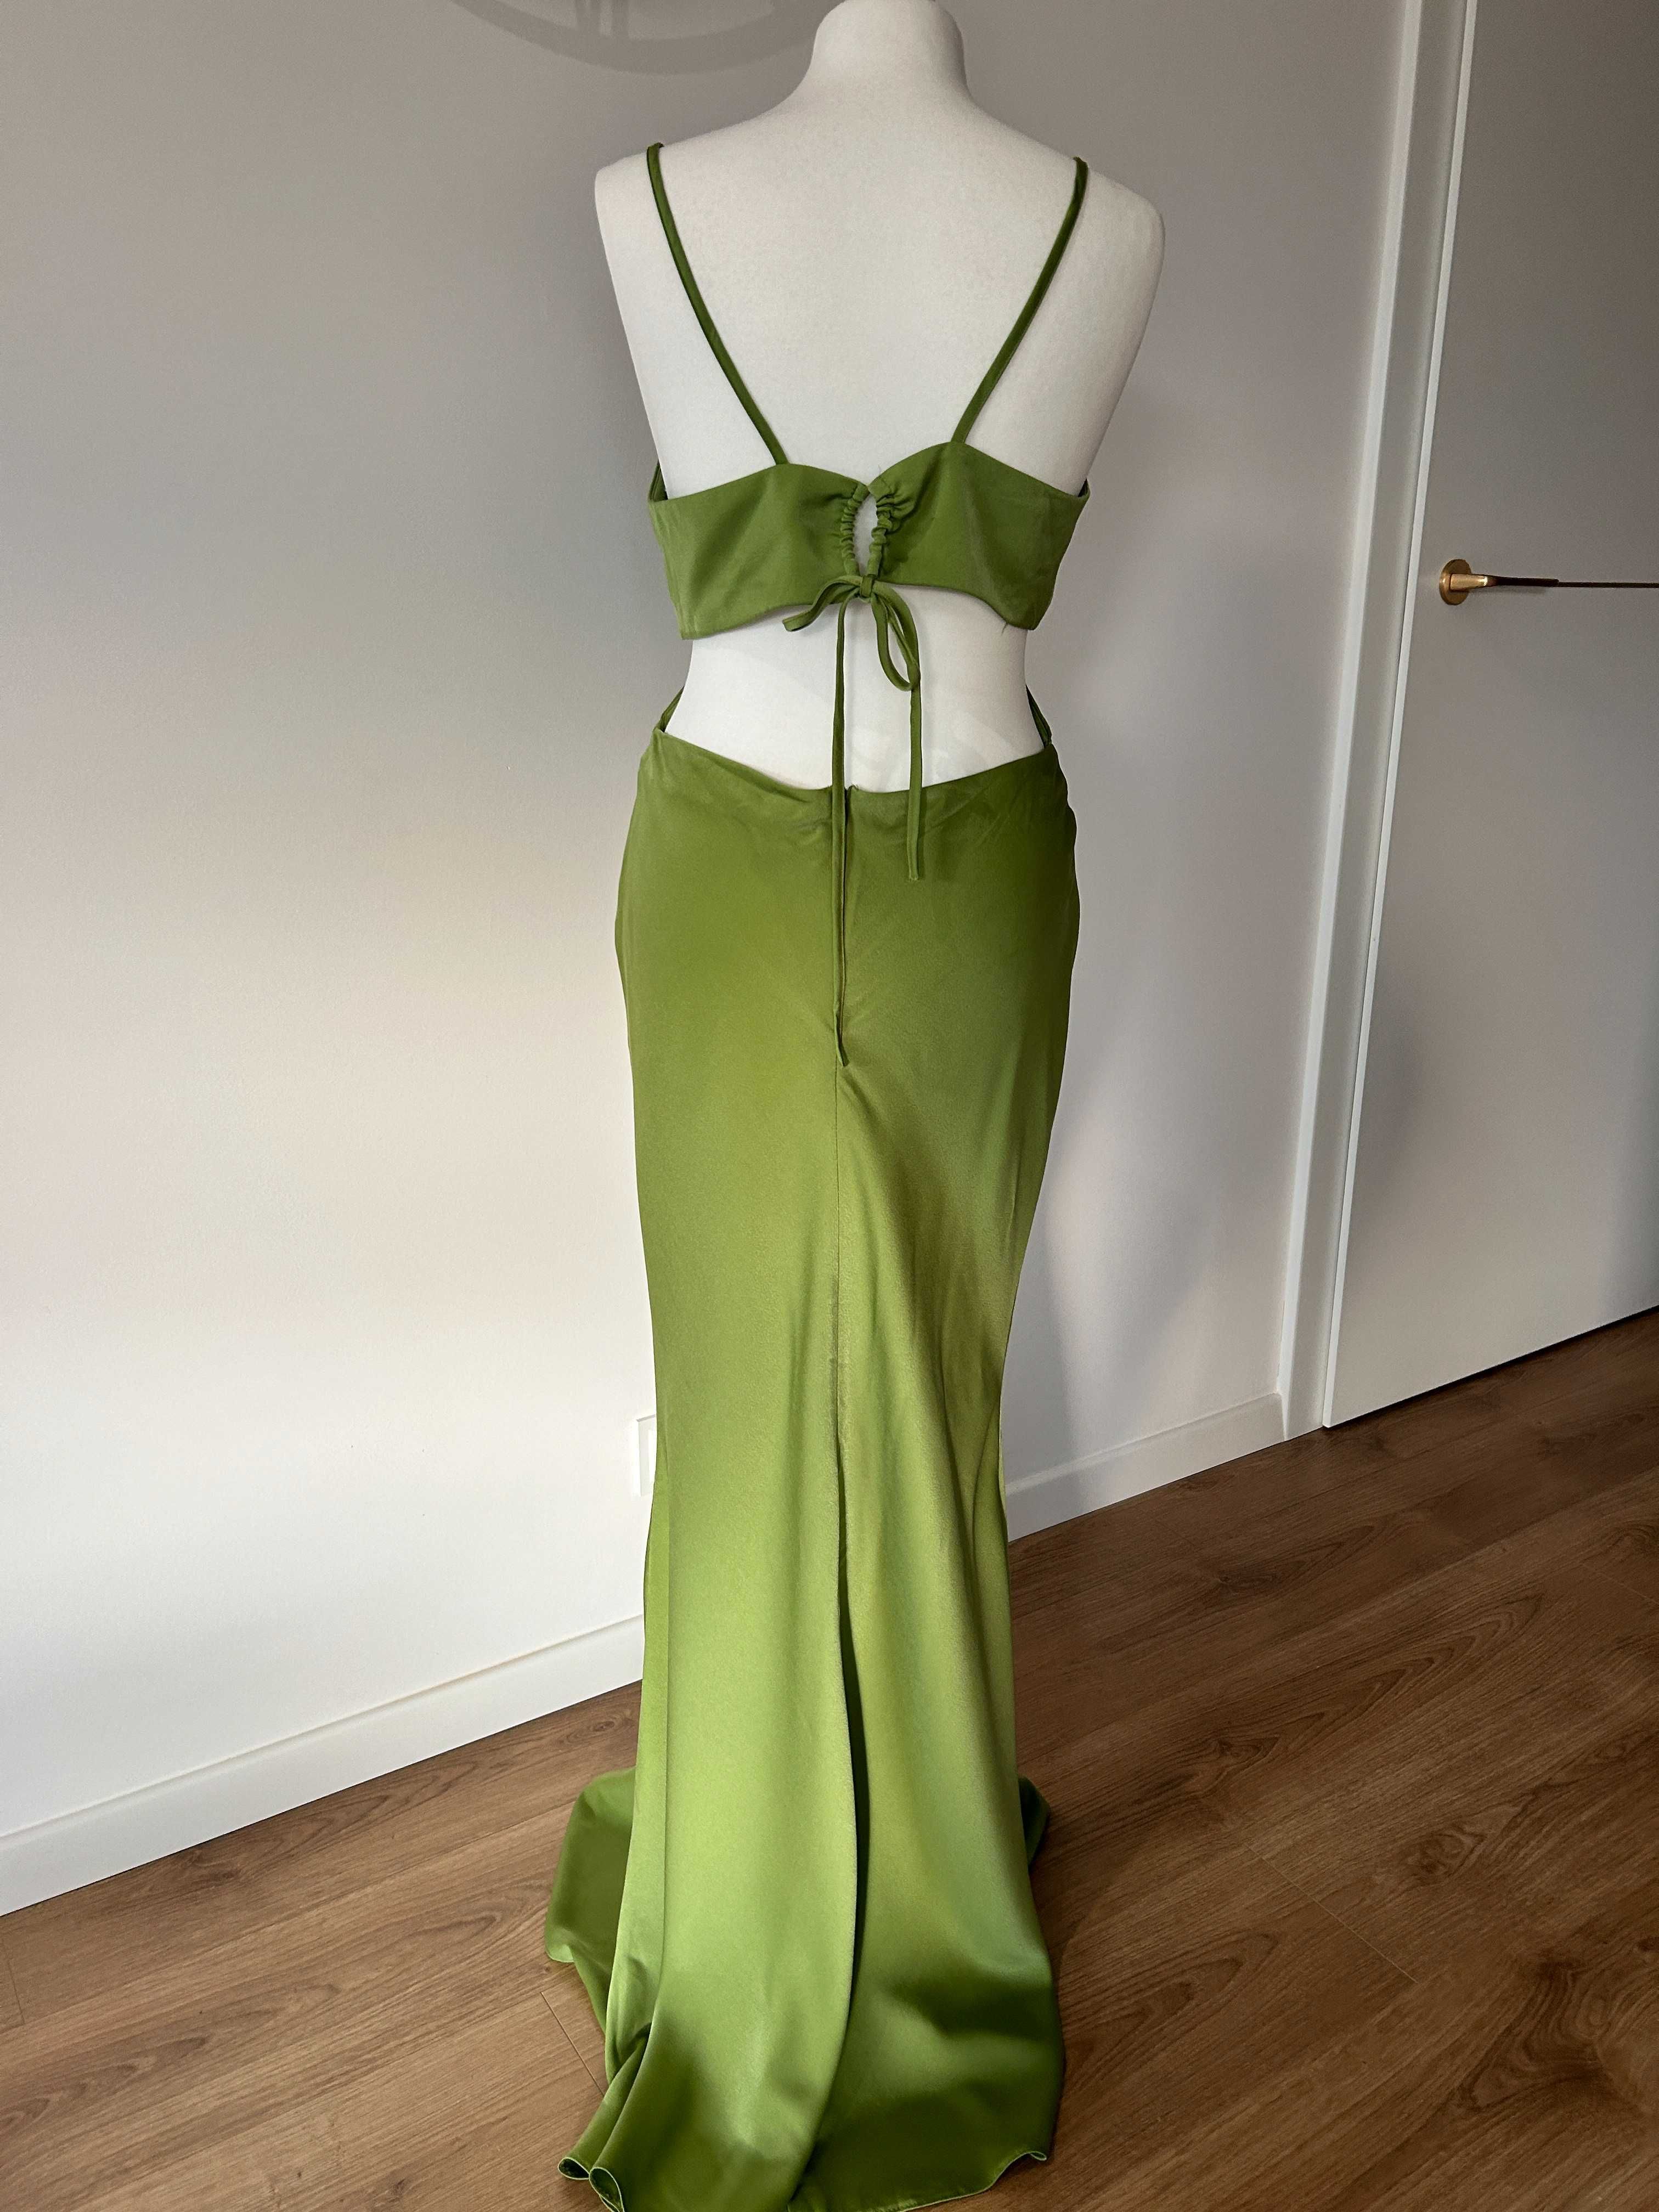 Asos maxi sukienka zielona wiązana z wycięciem wiązane plecy 40 (12)